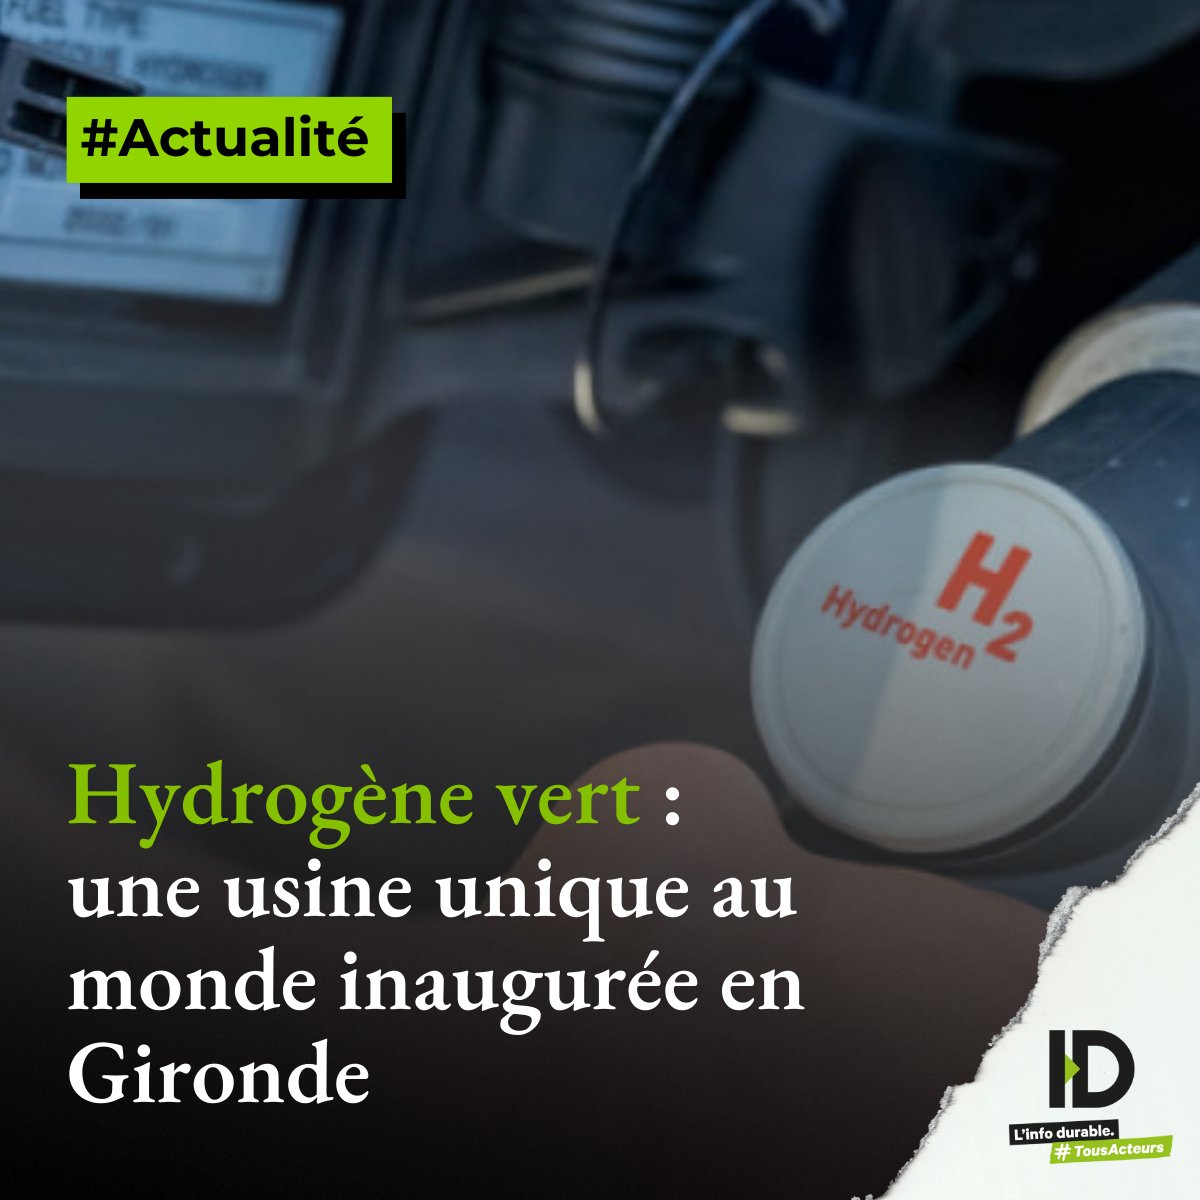 Hydrogène de France (HDF Energy) a inauguré jeudi à Blanquefort (Gironde), près de Bordeaux, la première usine au monde de piles à combustible de forte puissance, dont la production en série doit commencer en 2026.

Plus d’infos dans notre article ⬇
linfodurable.fr/environnement/…